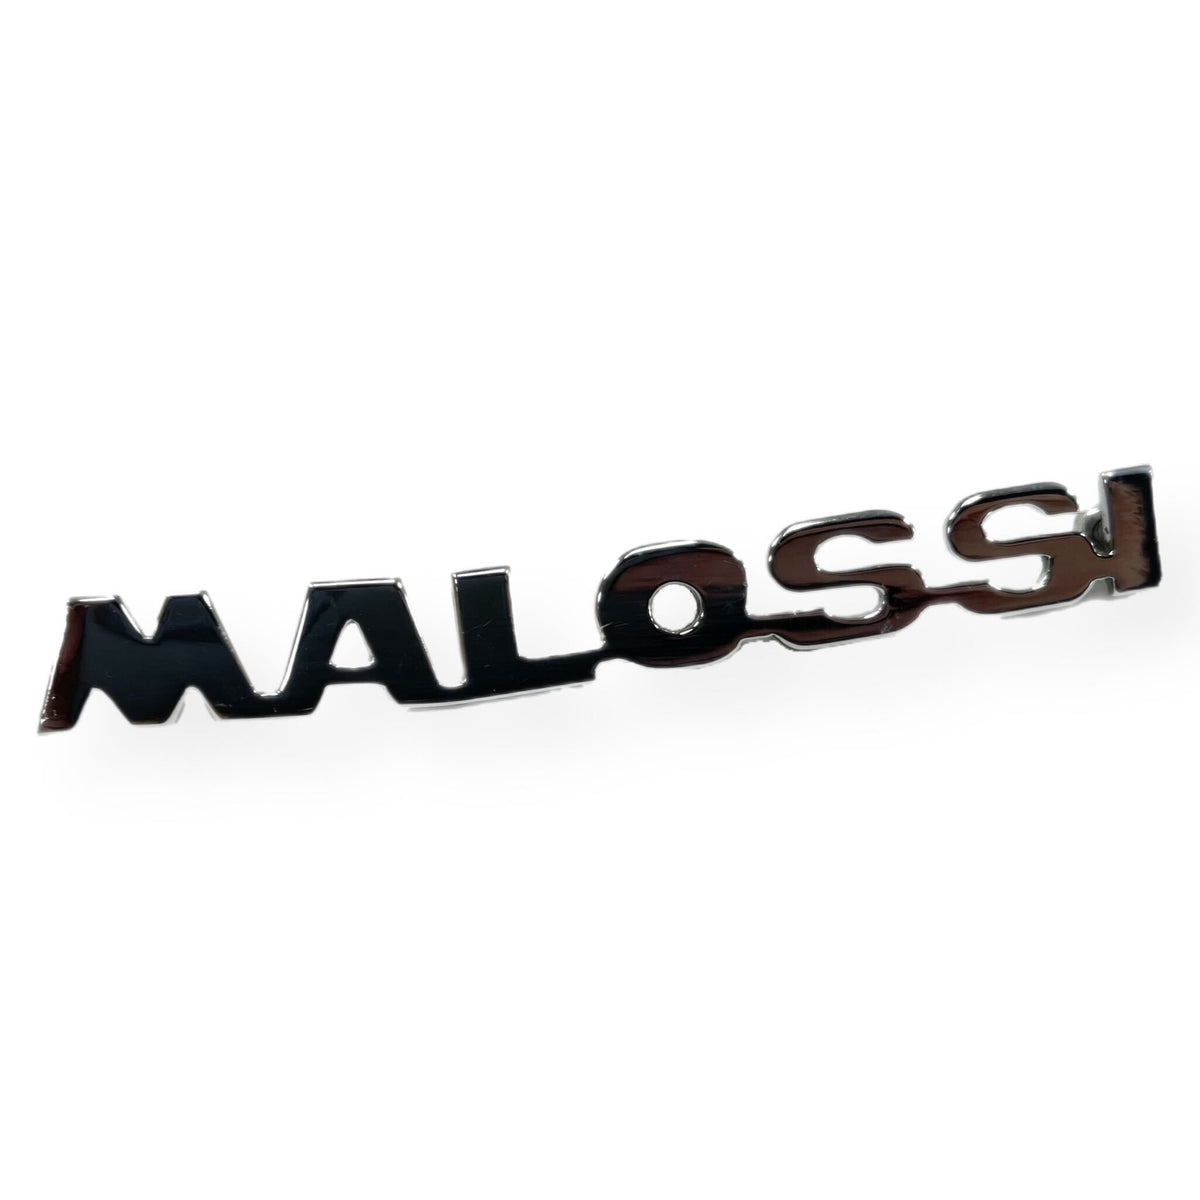 Vespa Lambretta Scooter MALOSSI Legshield Badge - Chromed Brass